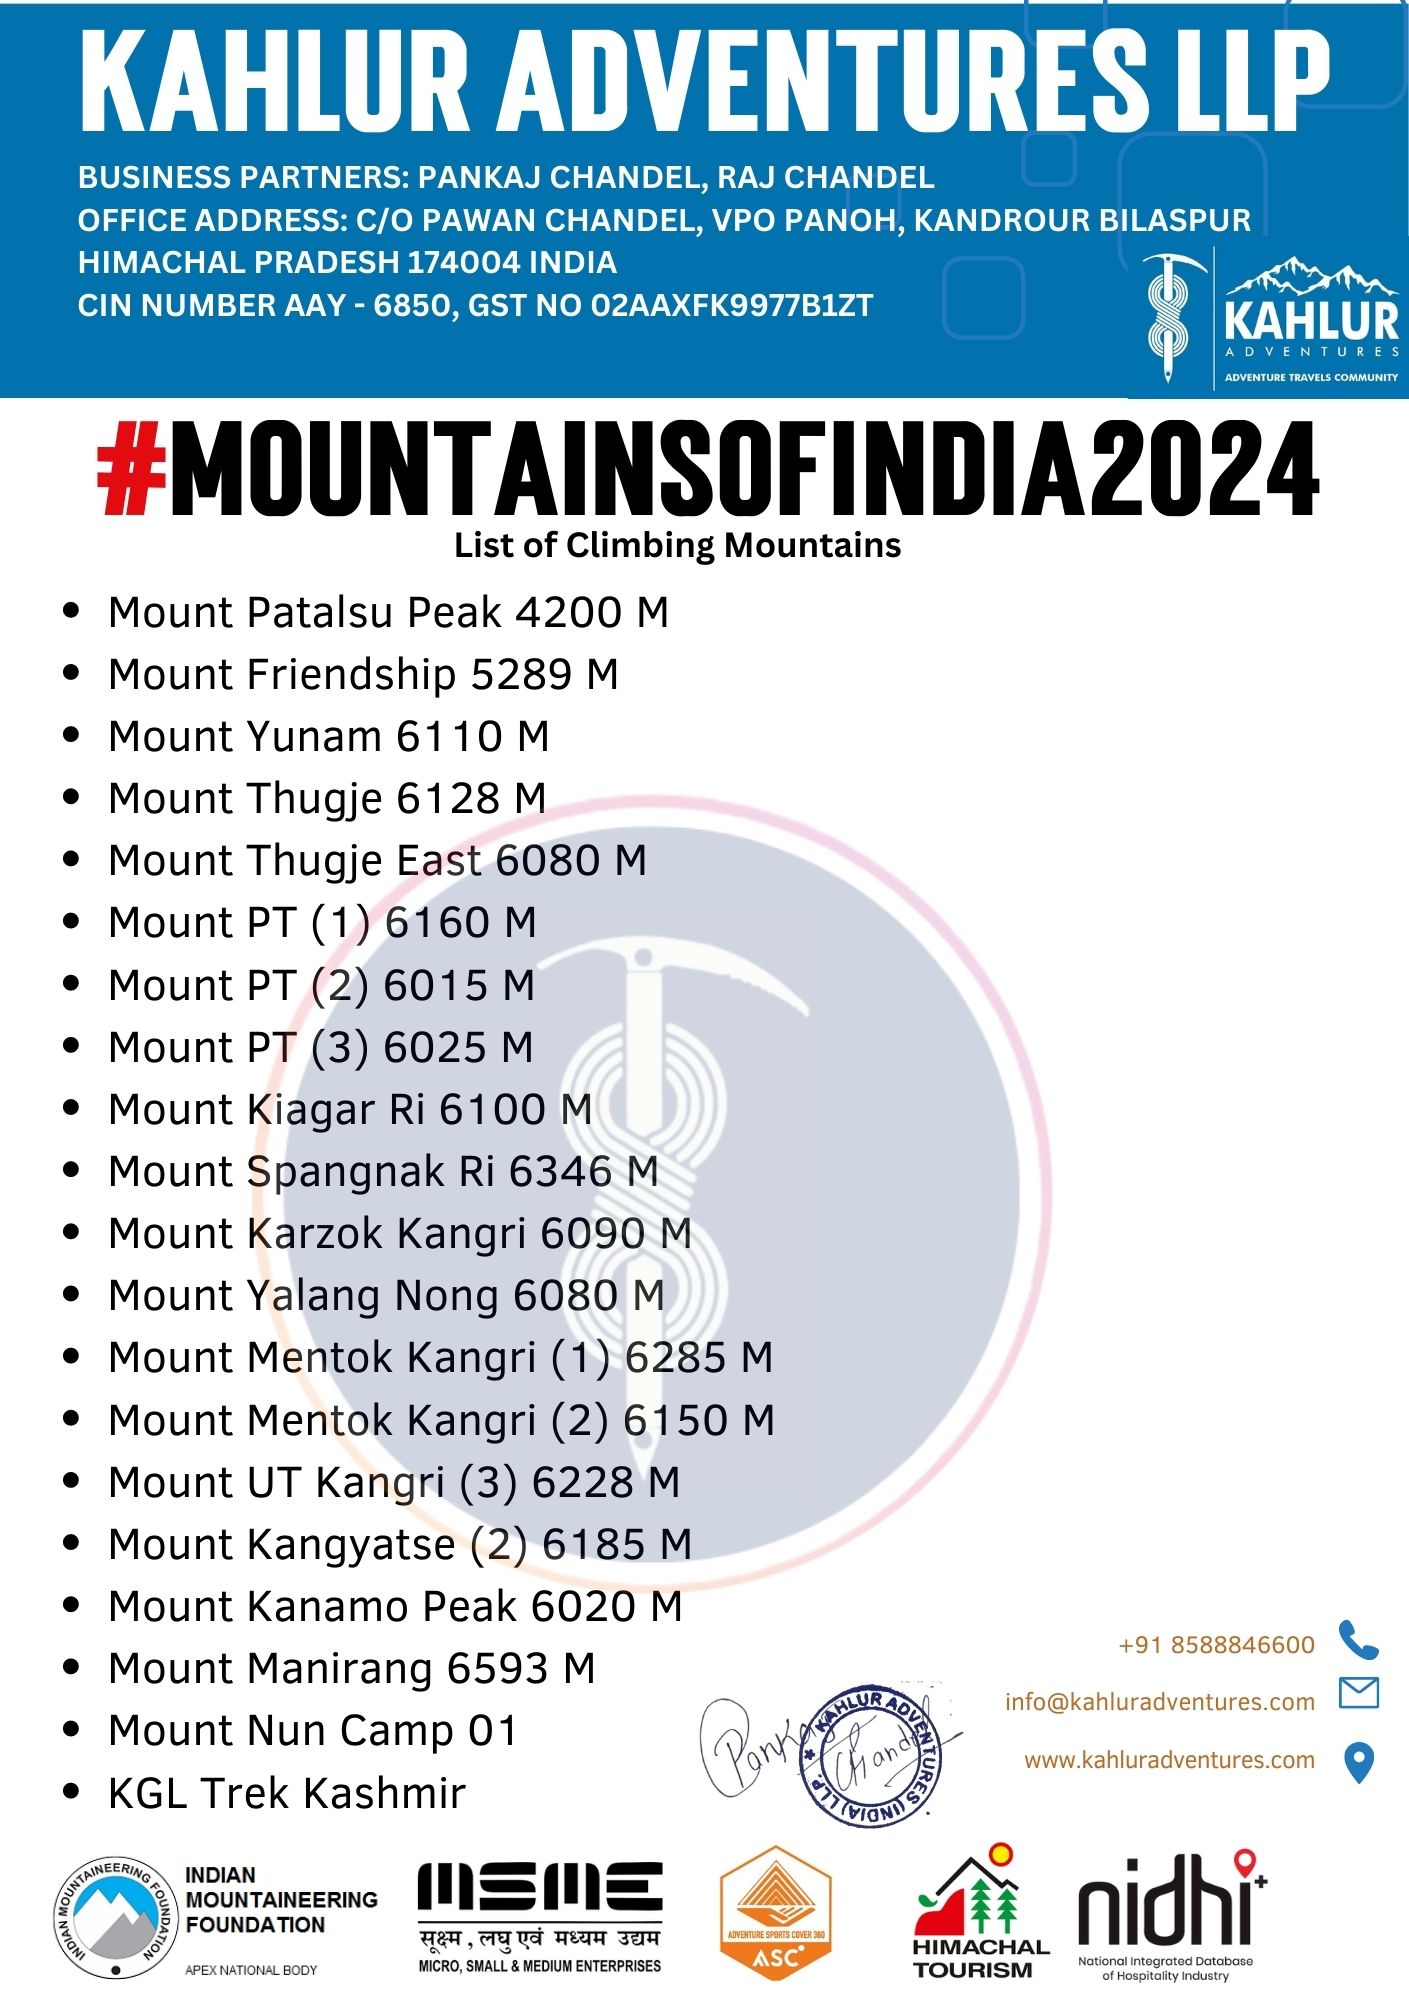 #MountainsofIndia2024